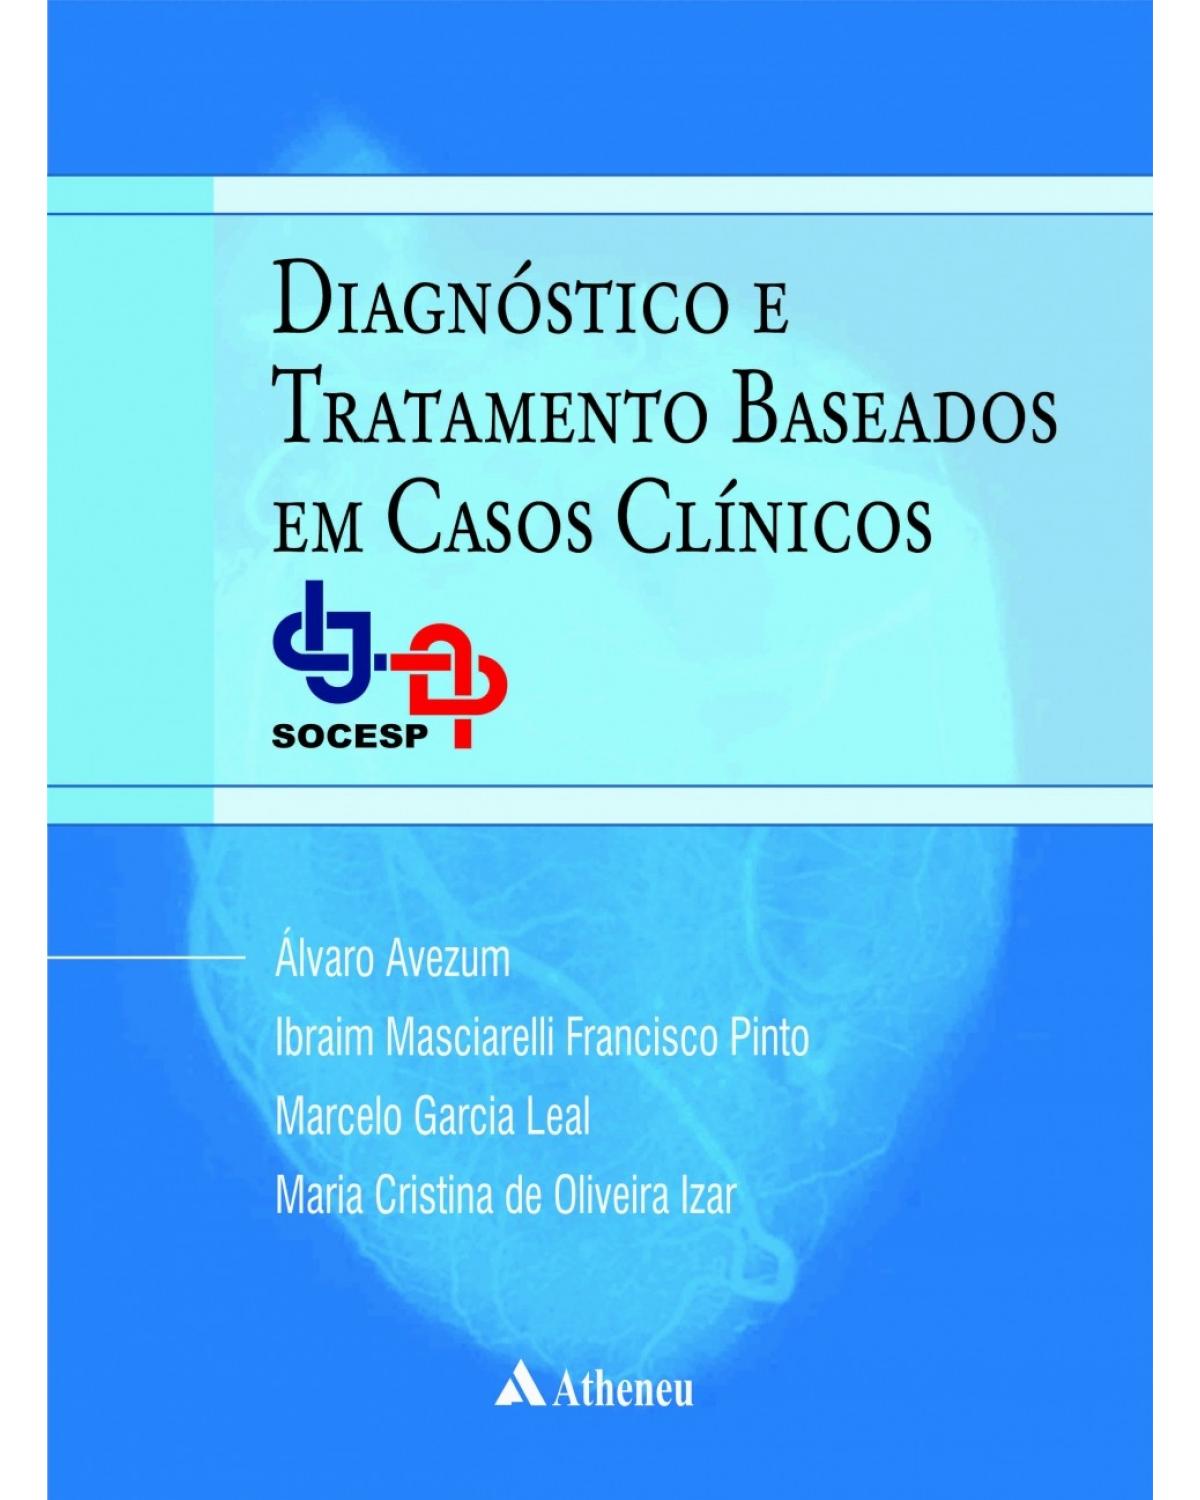 Diagnóstico e tratamento baseados em casos clínicos - SOCESP - 1ª Edição | 2017